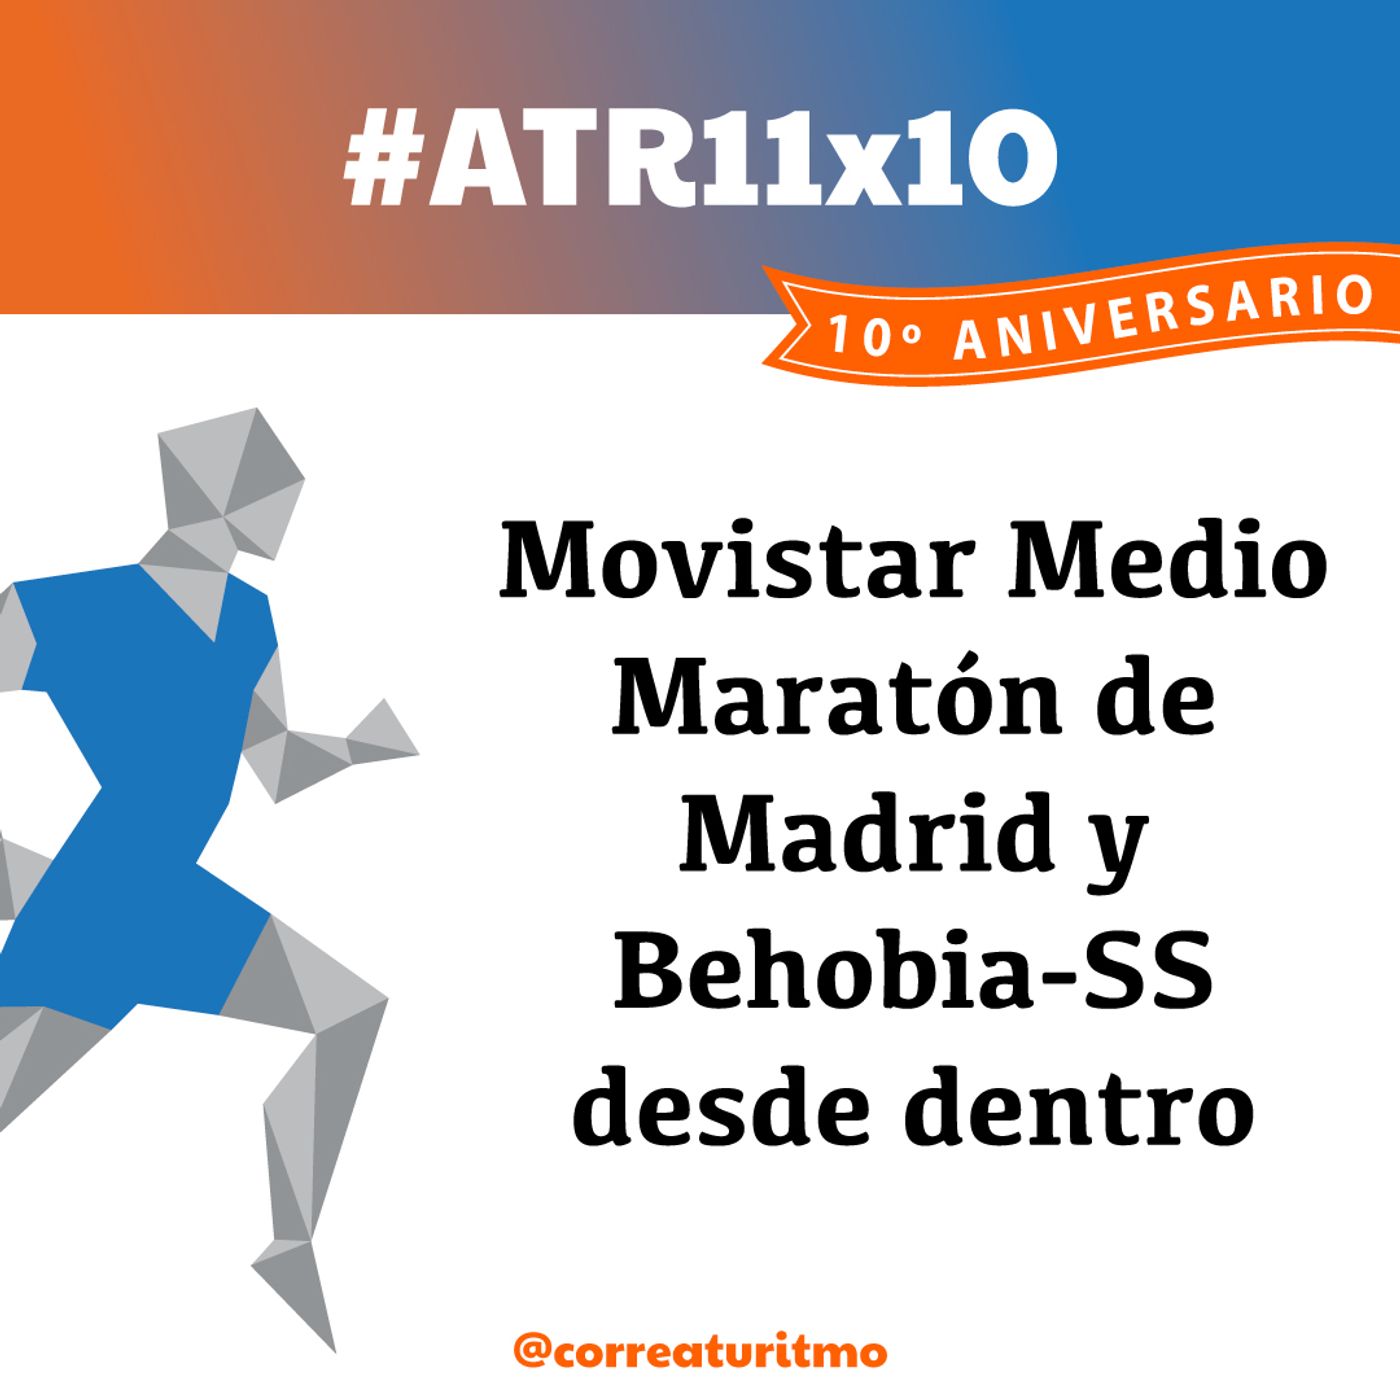 ATR 11x10 - Movistar Medio Maratón de Madrid y Behobia-San Sebastián desde dentro